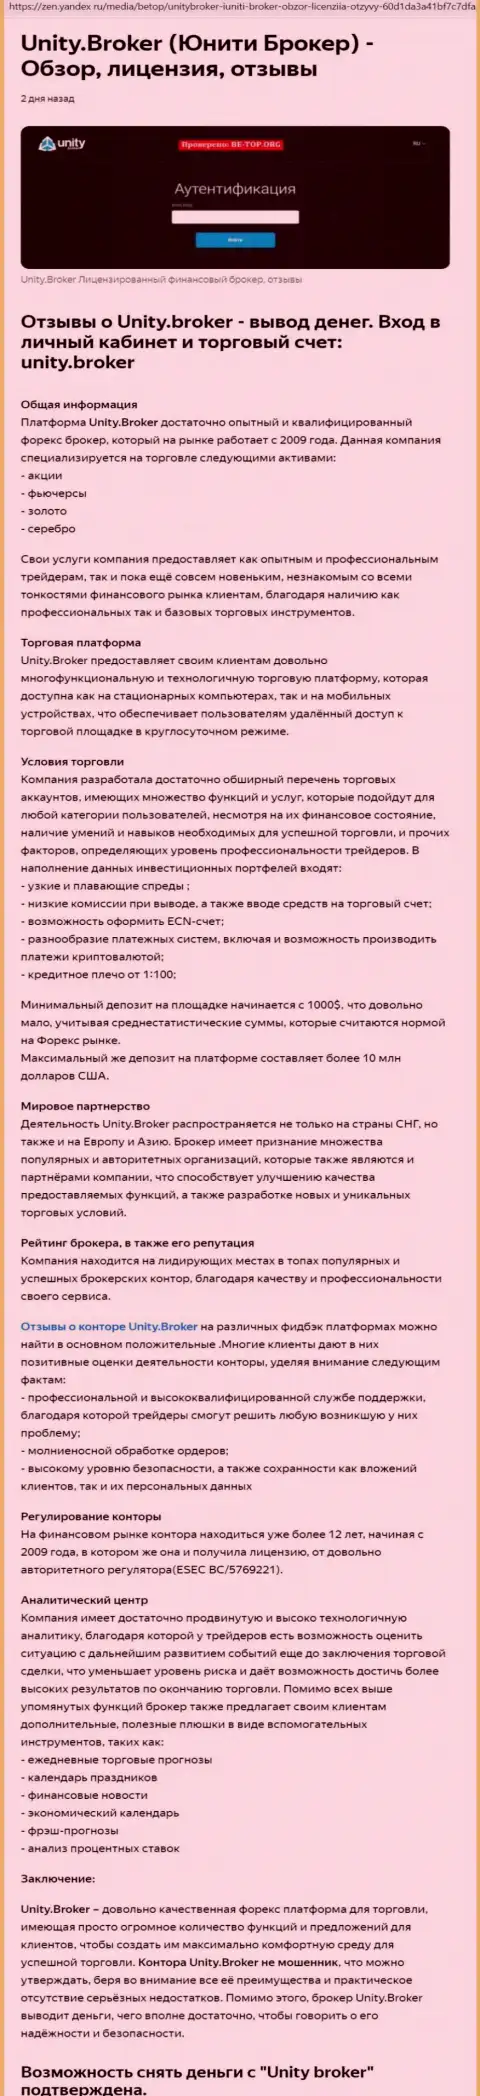 Обзор деятельности Форекс организации Unity Broker на сайте Yandex Zen